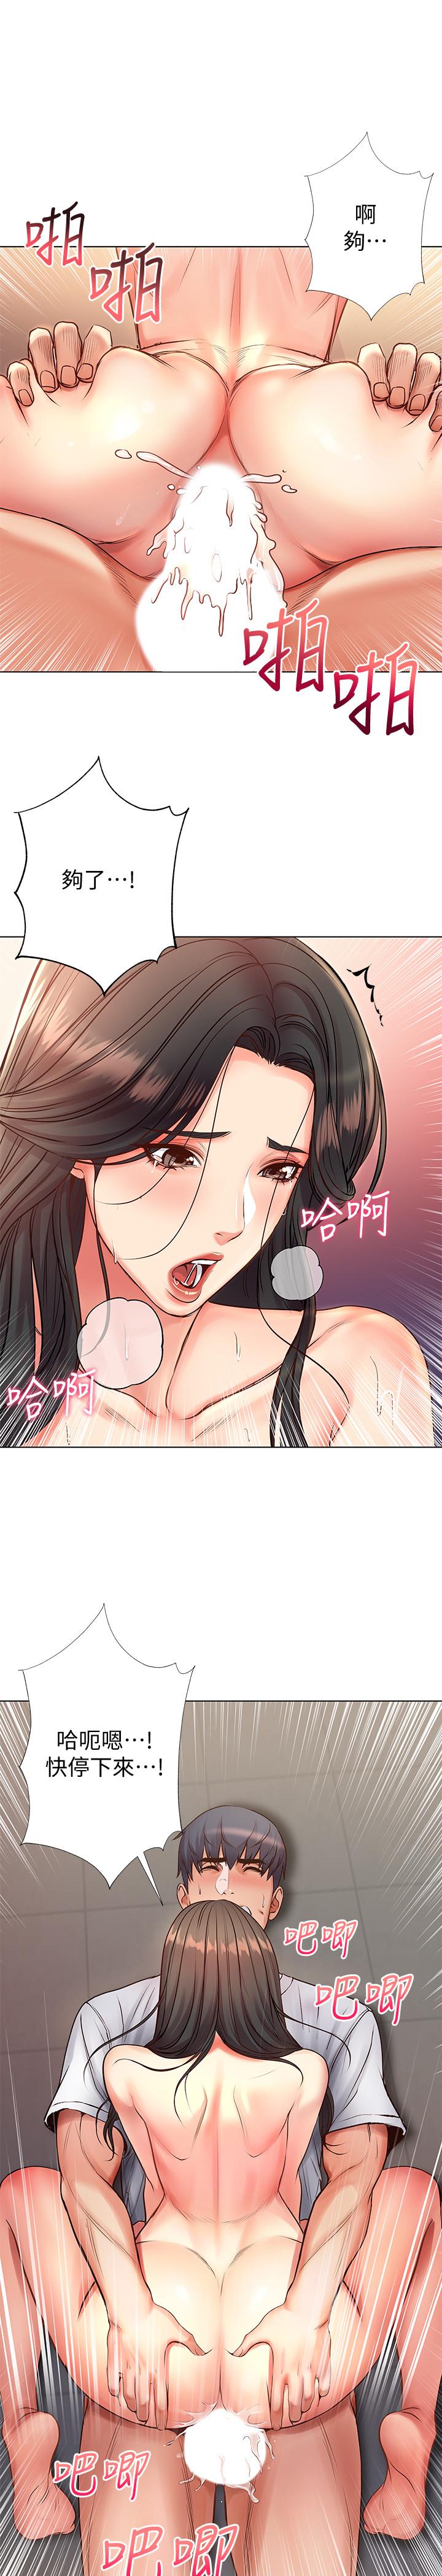 韩国污漫画 超市的漂亮姐姐 第39话-肉体交融的淫靡声音 15